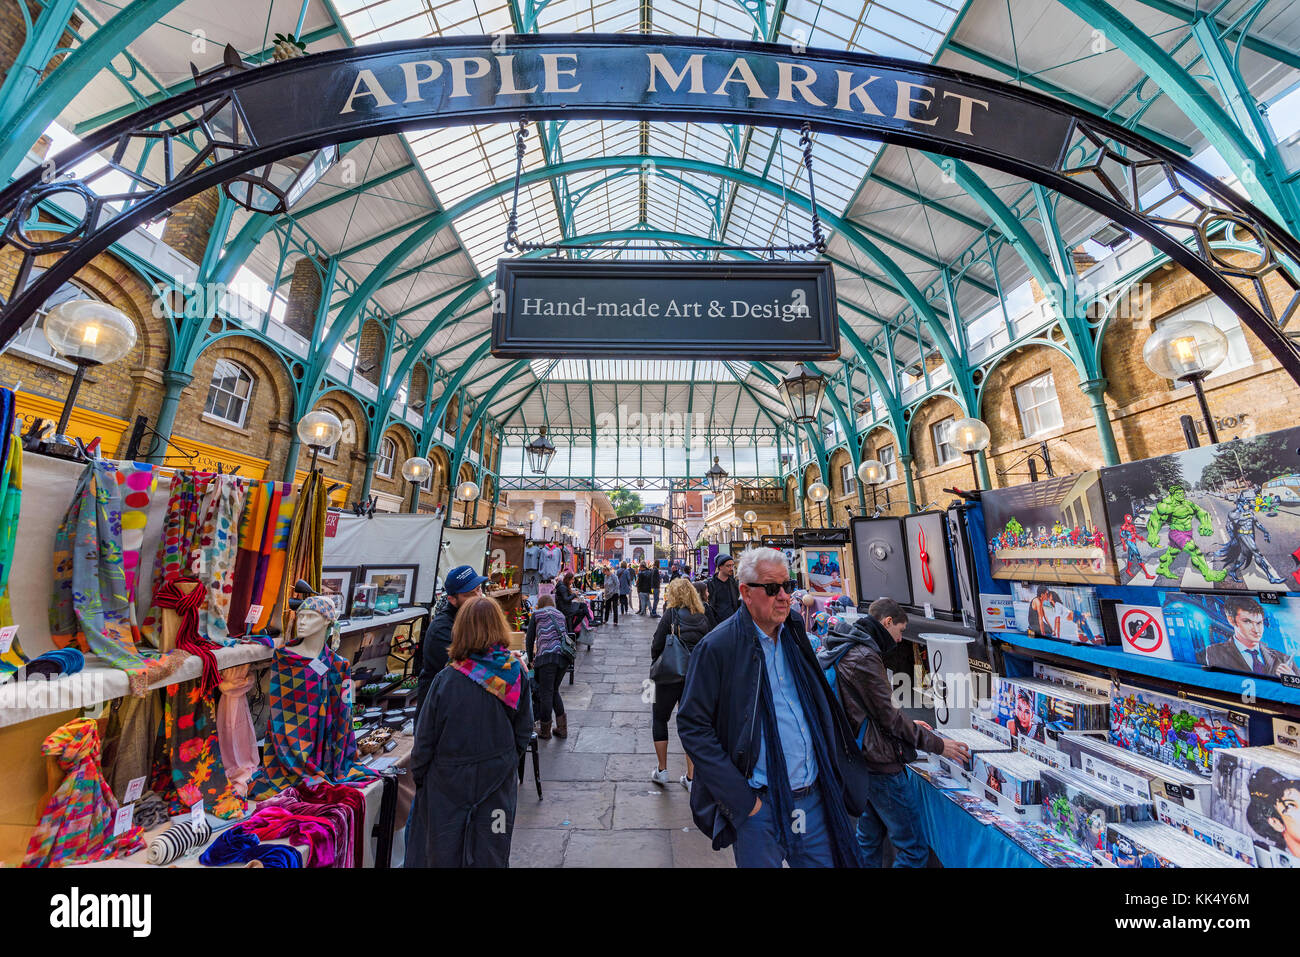 London, Regno Unito - 06 ottobre: questo è il mercato delle mele in covent garden area che è una destinazione turistica popolare, il mercato vende arte e d Foto Stock